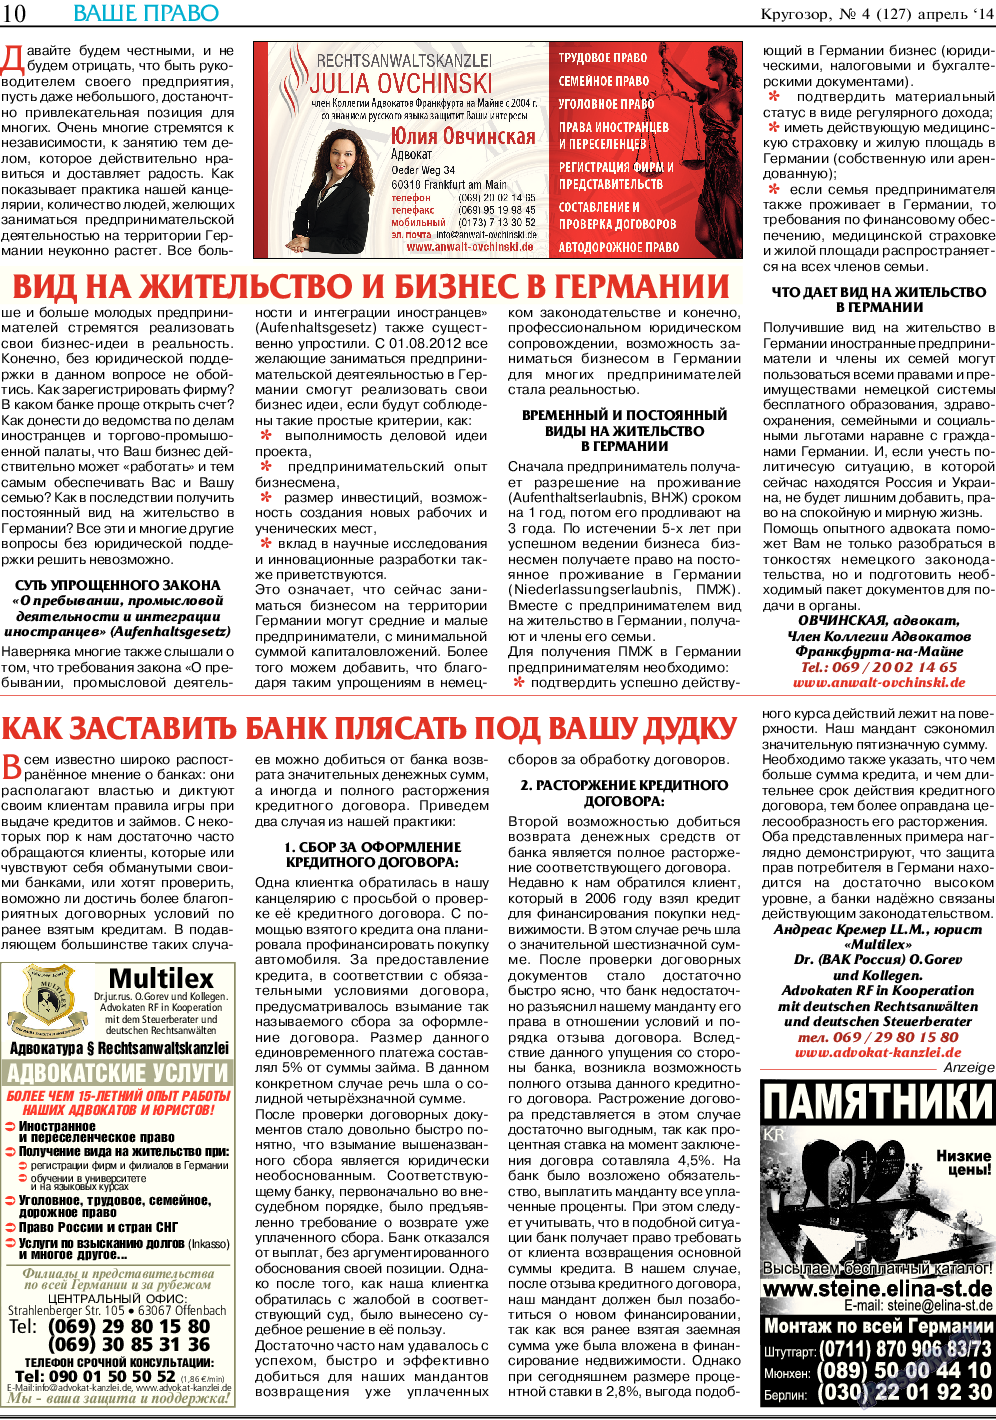 Кругозор, газета. 2014 №4 стр.10